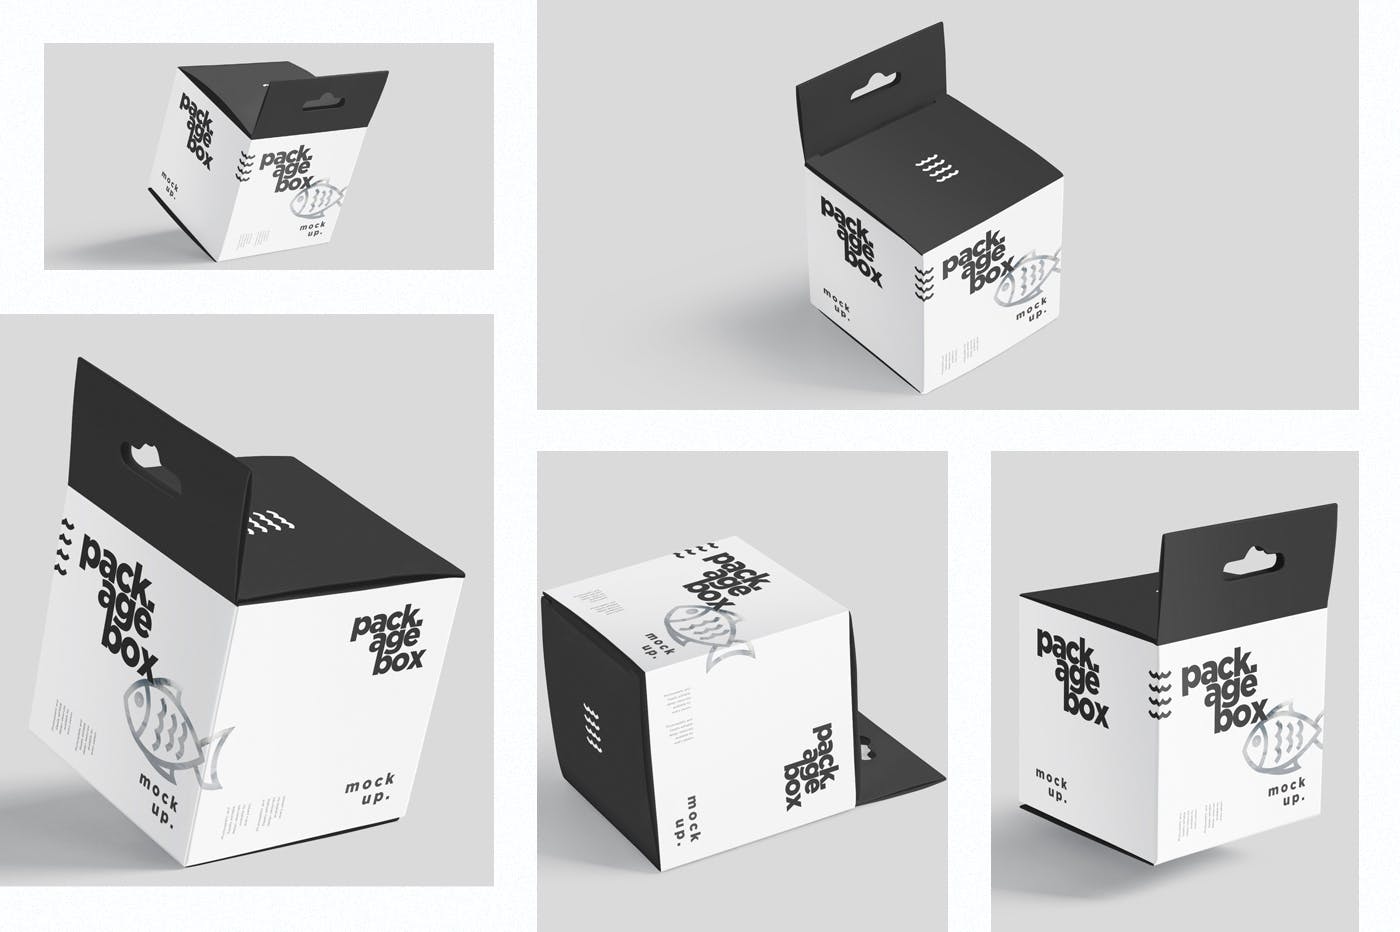 挂耳式方形产品包装盒样机模板 Package Box Mockup Set – Square With Hanger插图1